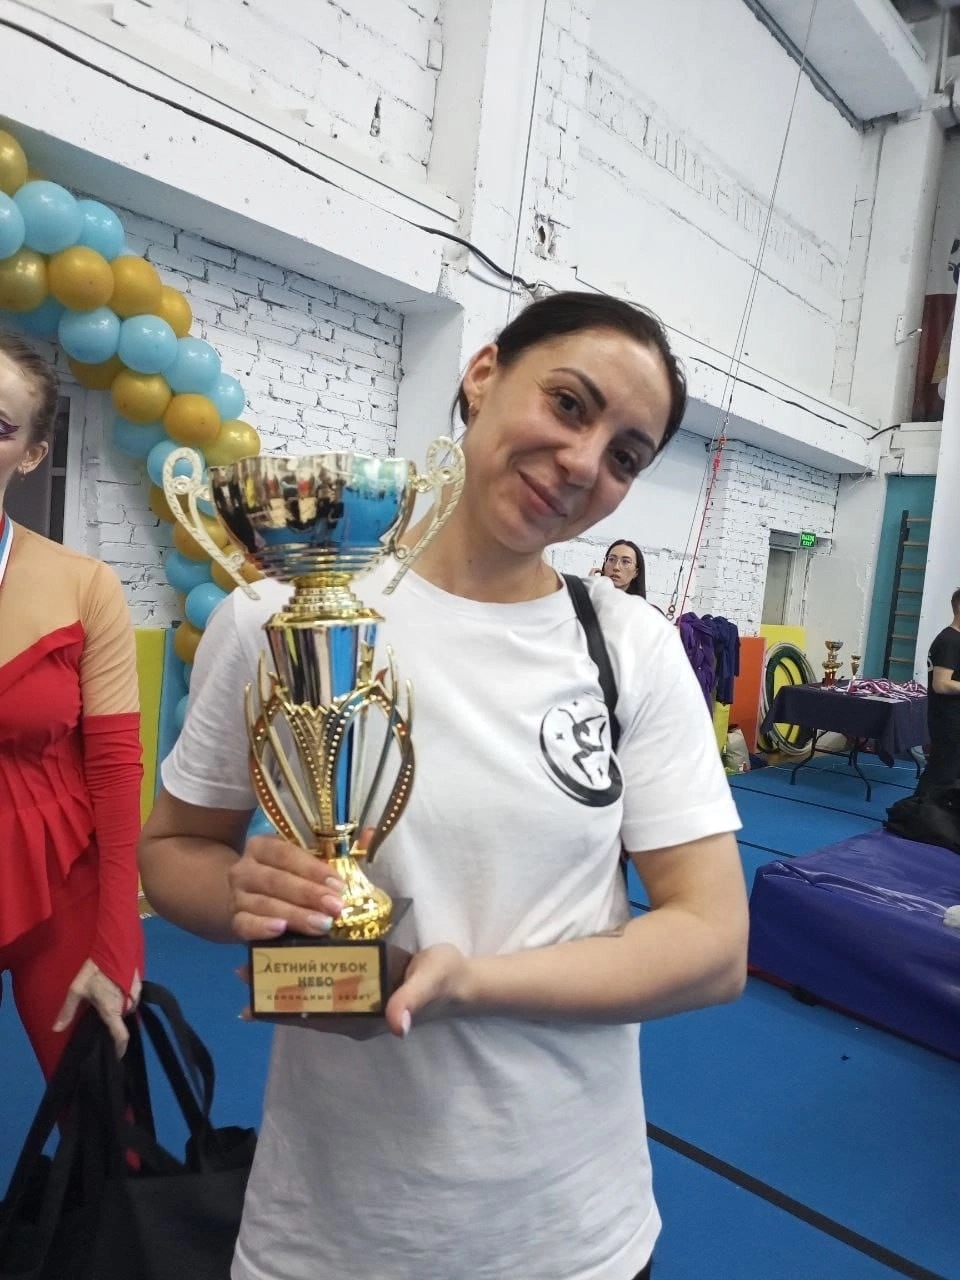 Брянцы завоевали командный Кубок на чемпионате страны по воздушной акробатике